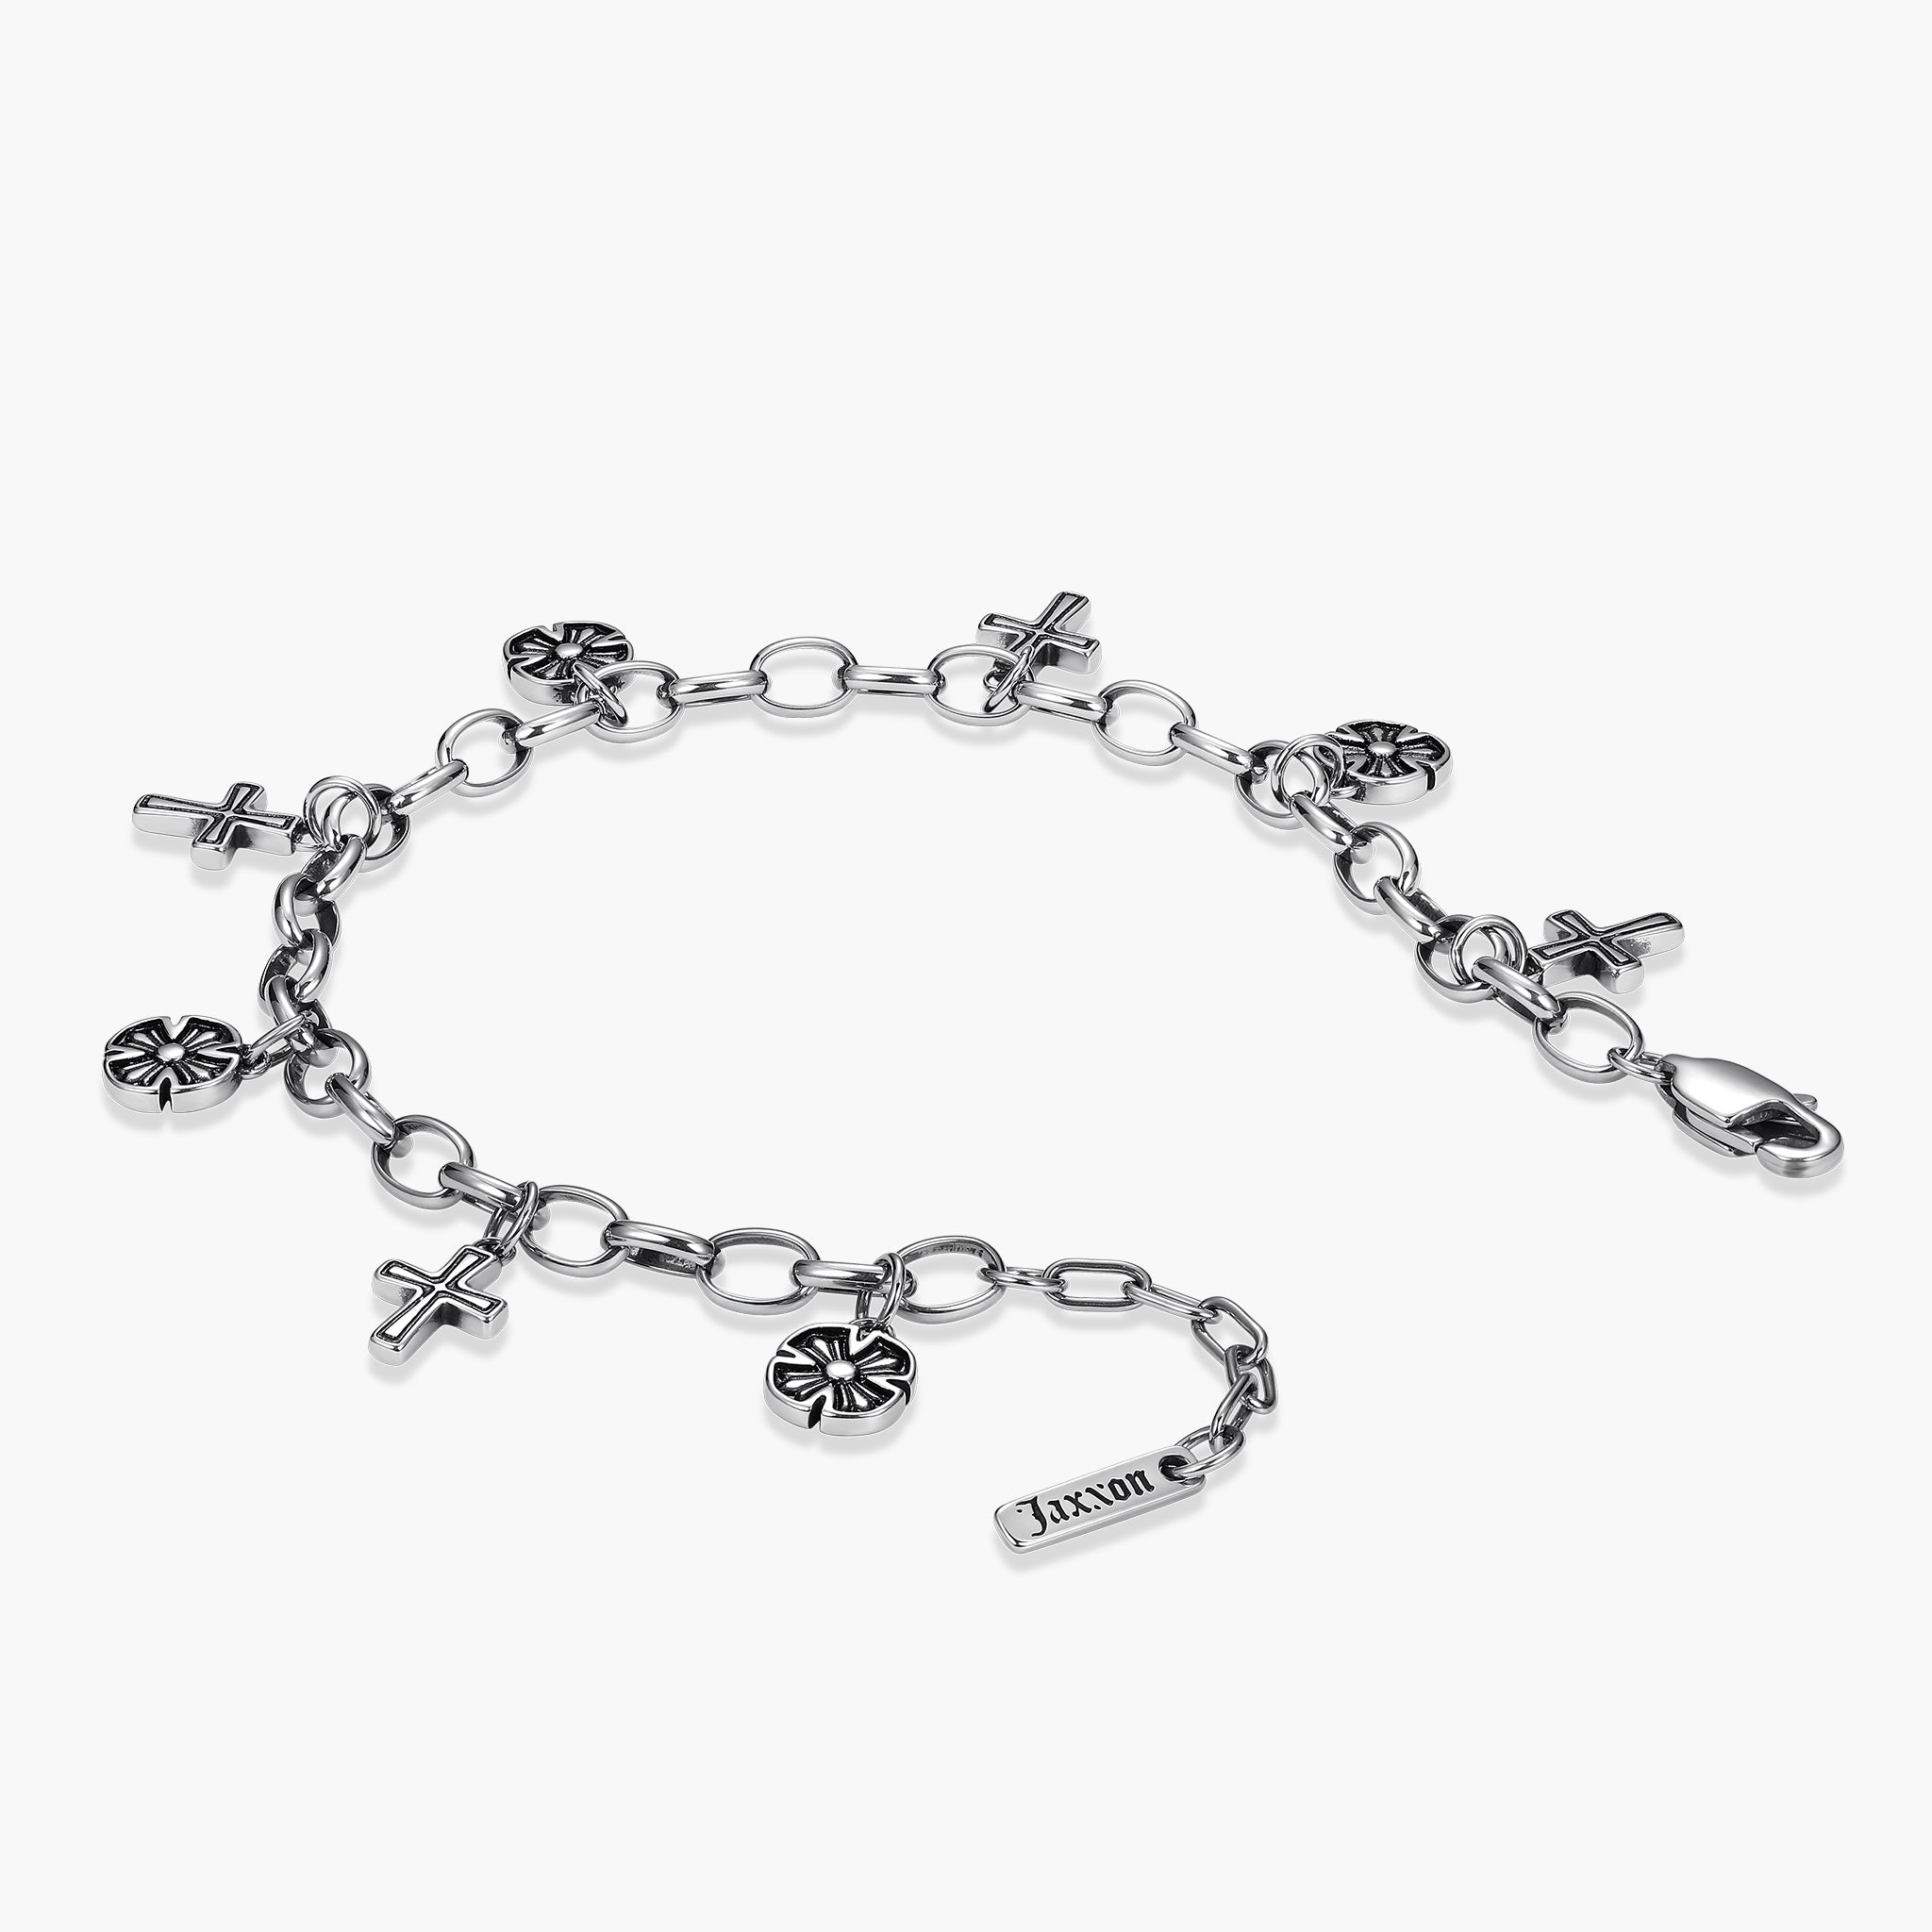 Men's Byzantine Chain Bracelet in Sterling Silver, 8.5 inch